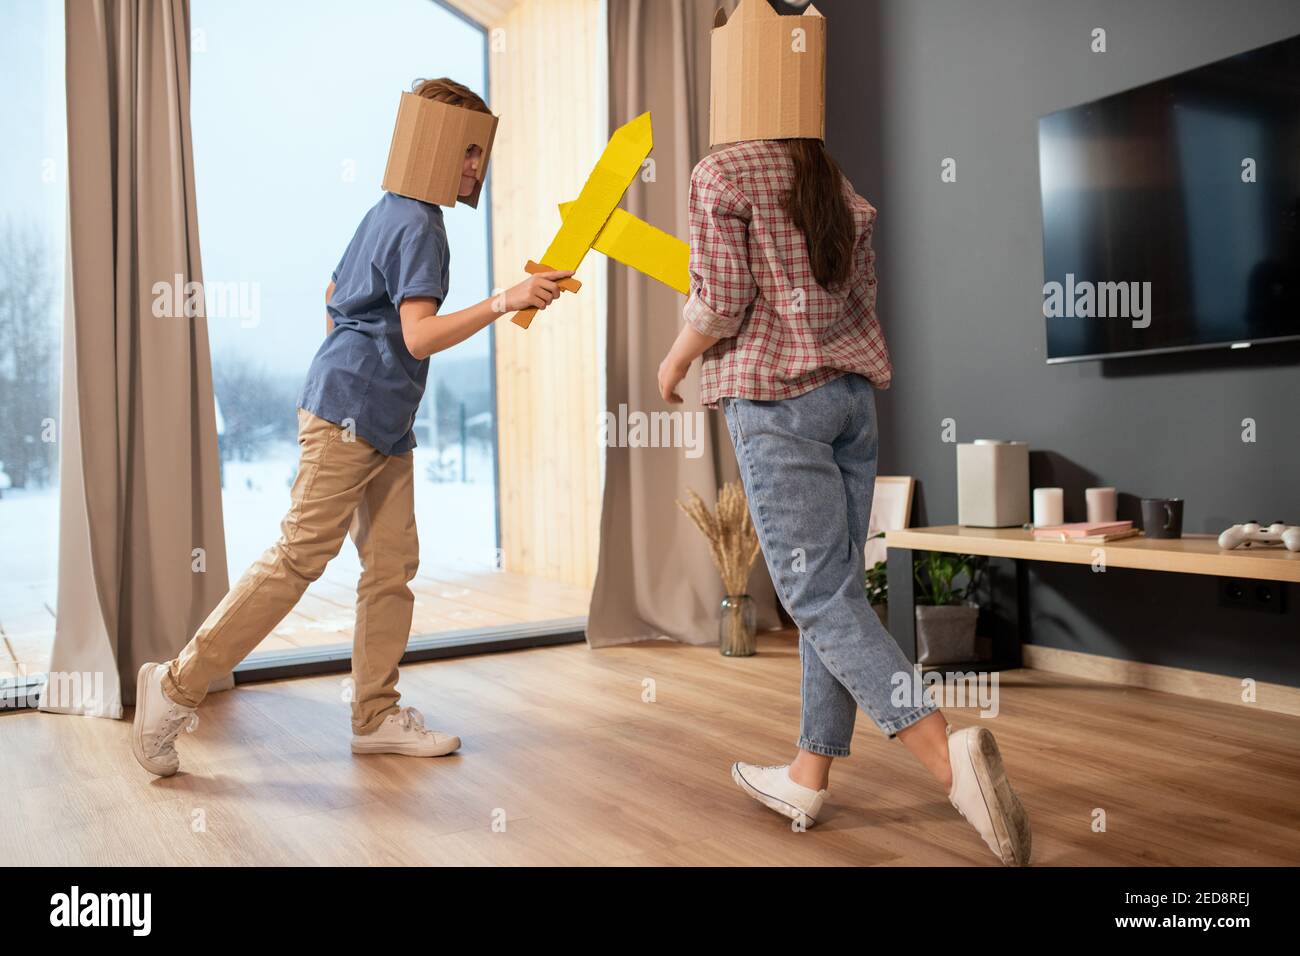 Zwei verspielte Geschwister in Casualwear und Papphelmen kämpfen mit Spielzeug Schwerter gegen große Fenster mit beigen Vorhängen im Wohnzimmer Stockfoto